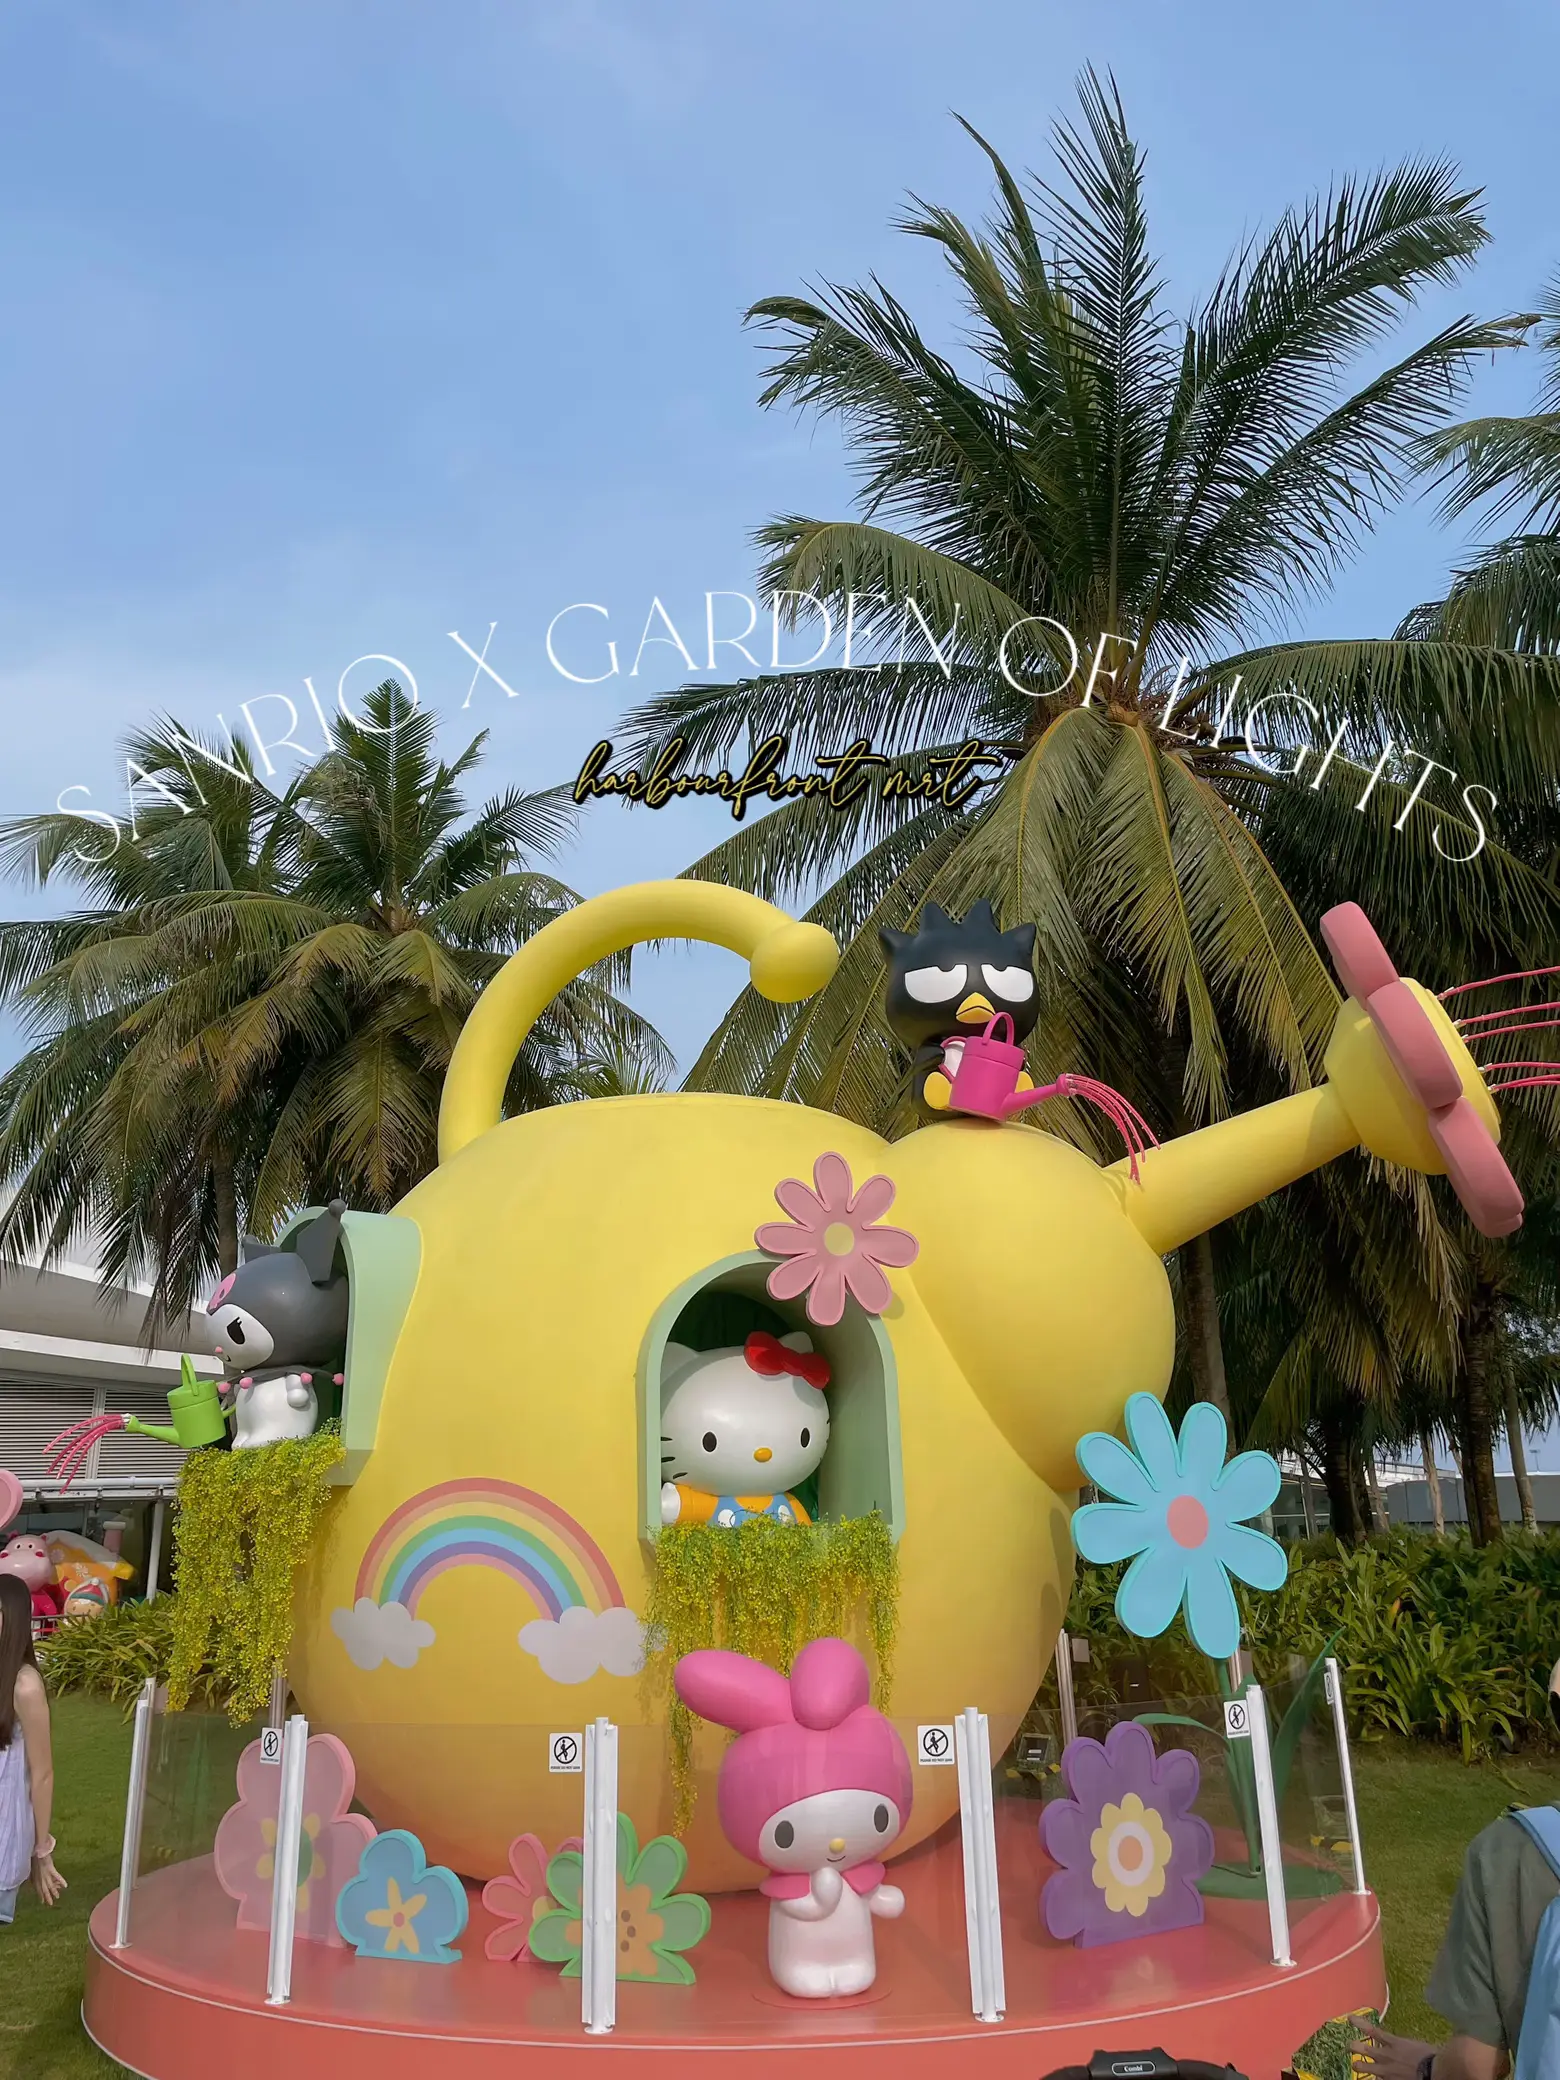 Sanrio Puroland Hello Kitty Cinnamoroll Plush Toy From Japan Y/N